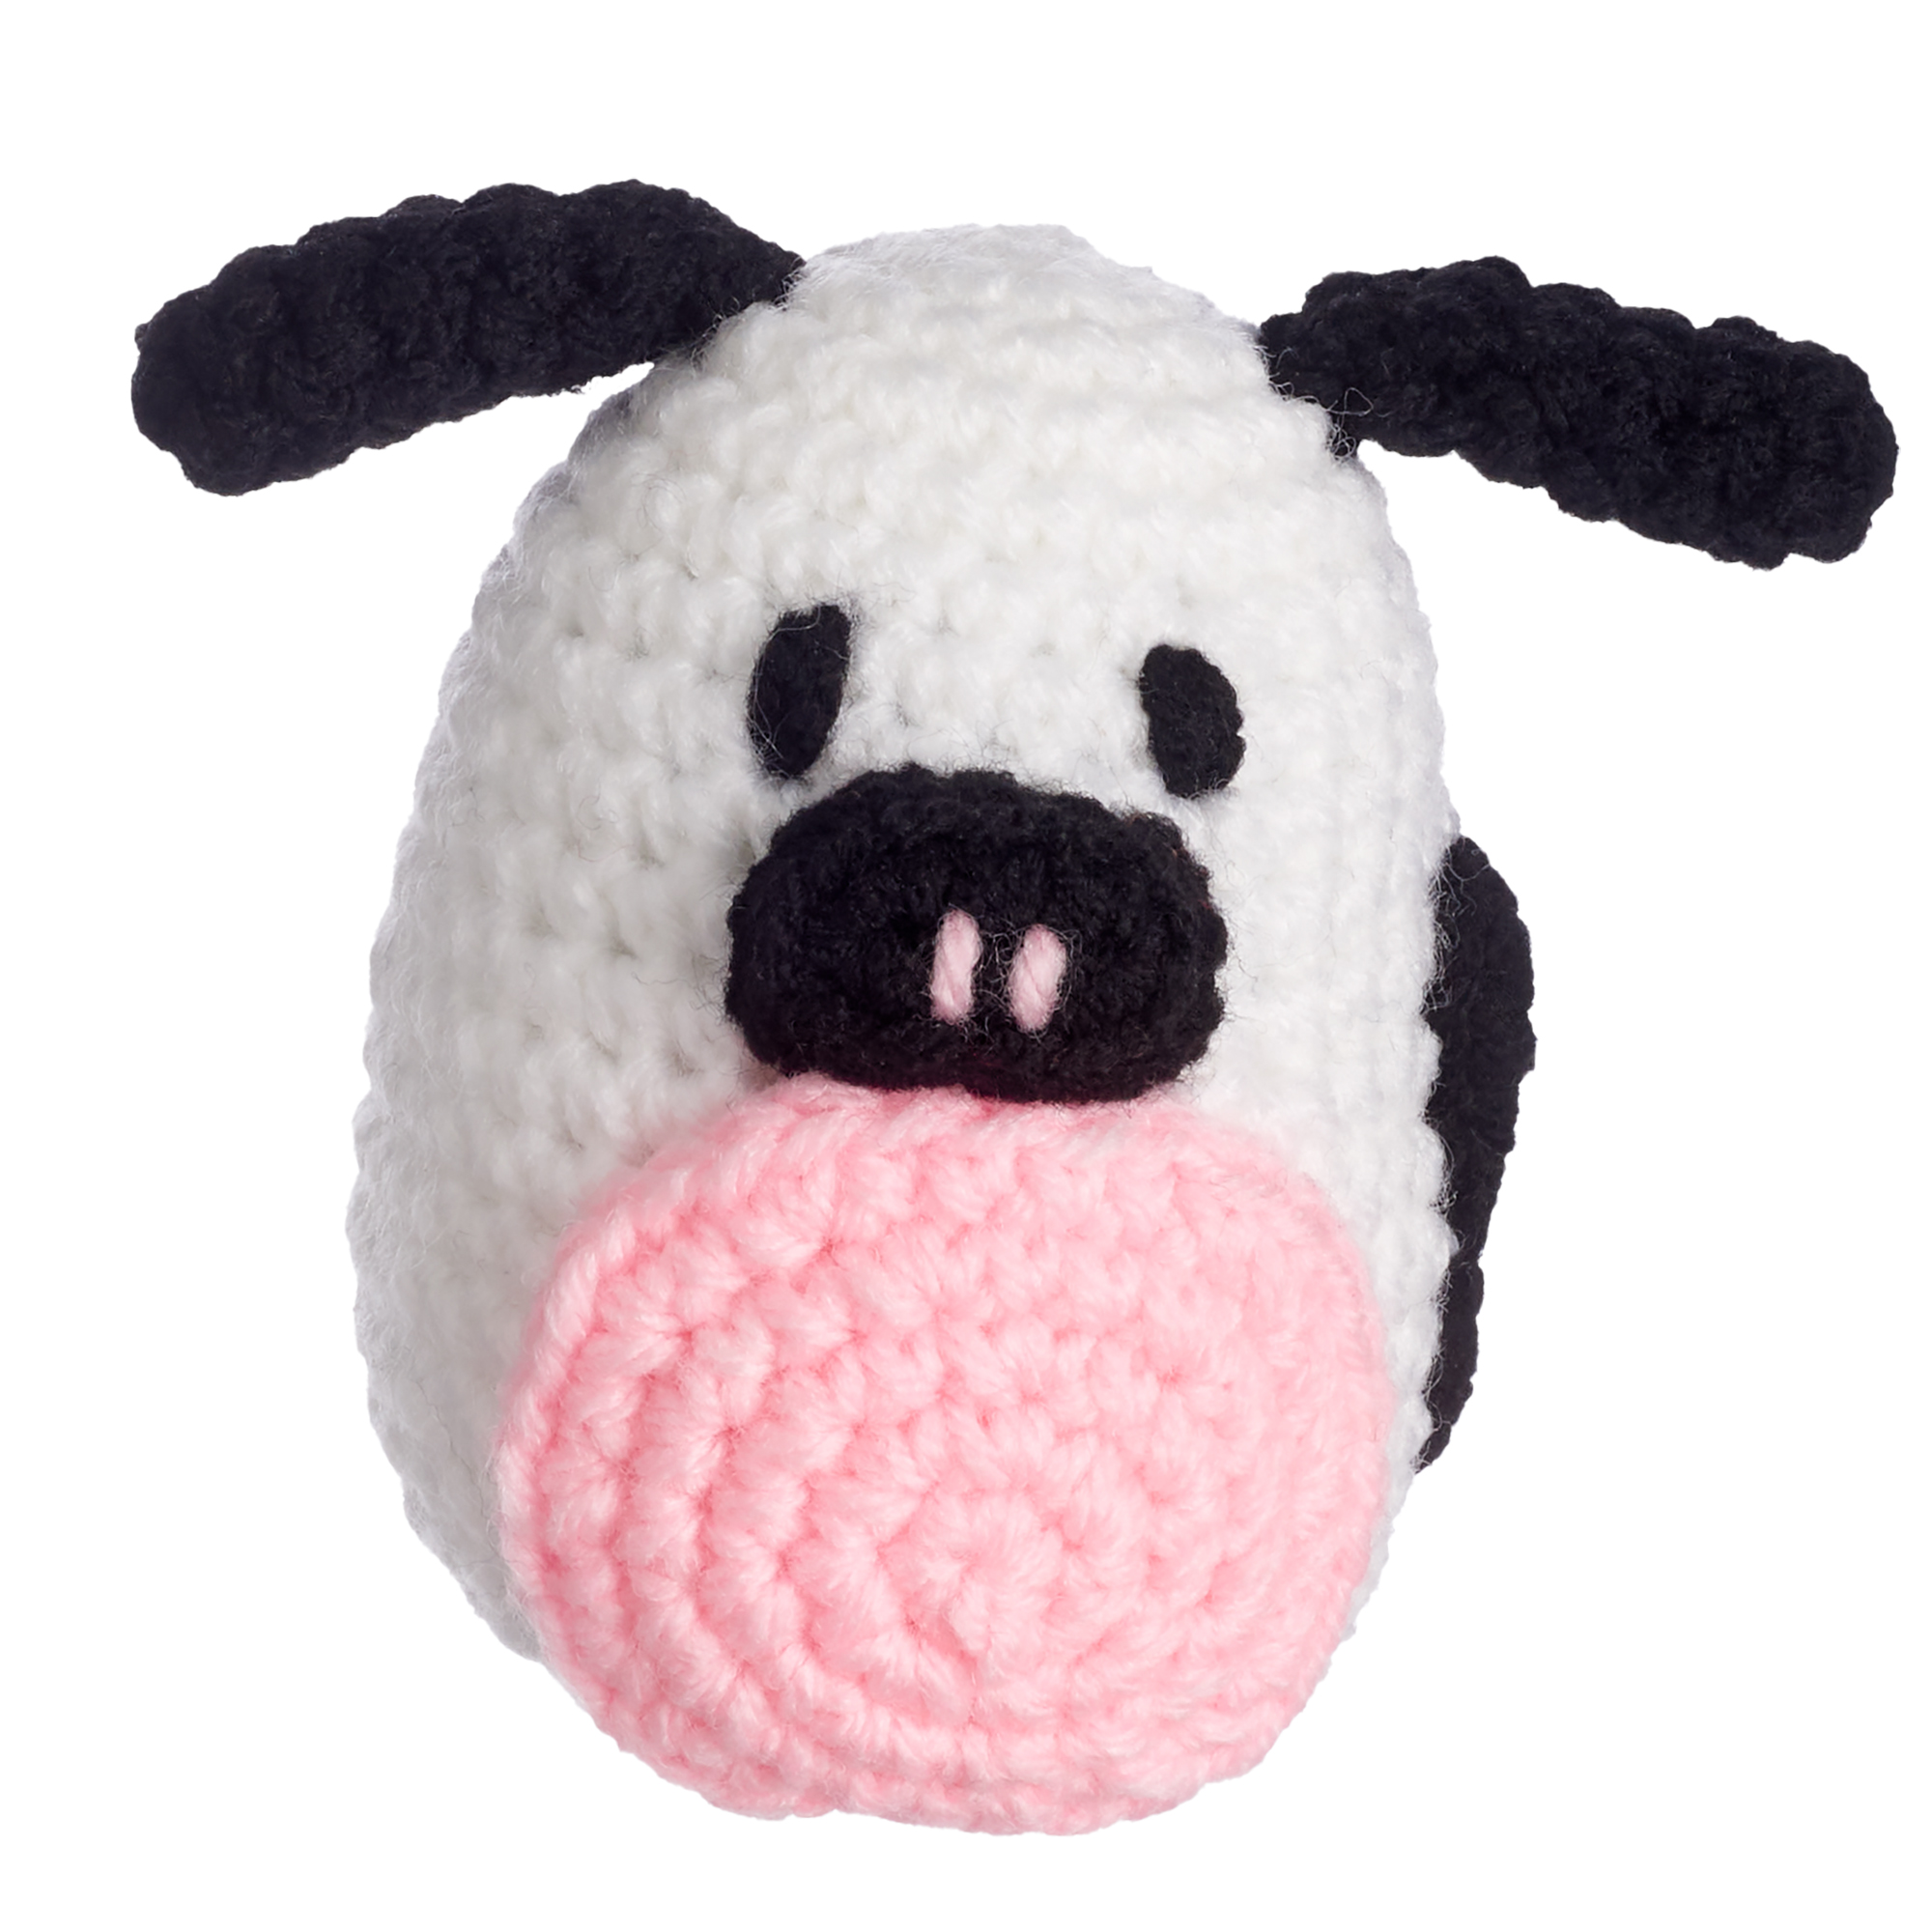 COW CROCHET KIT – My crochet kit